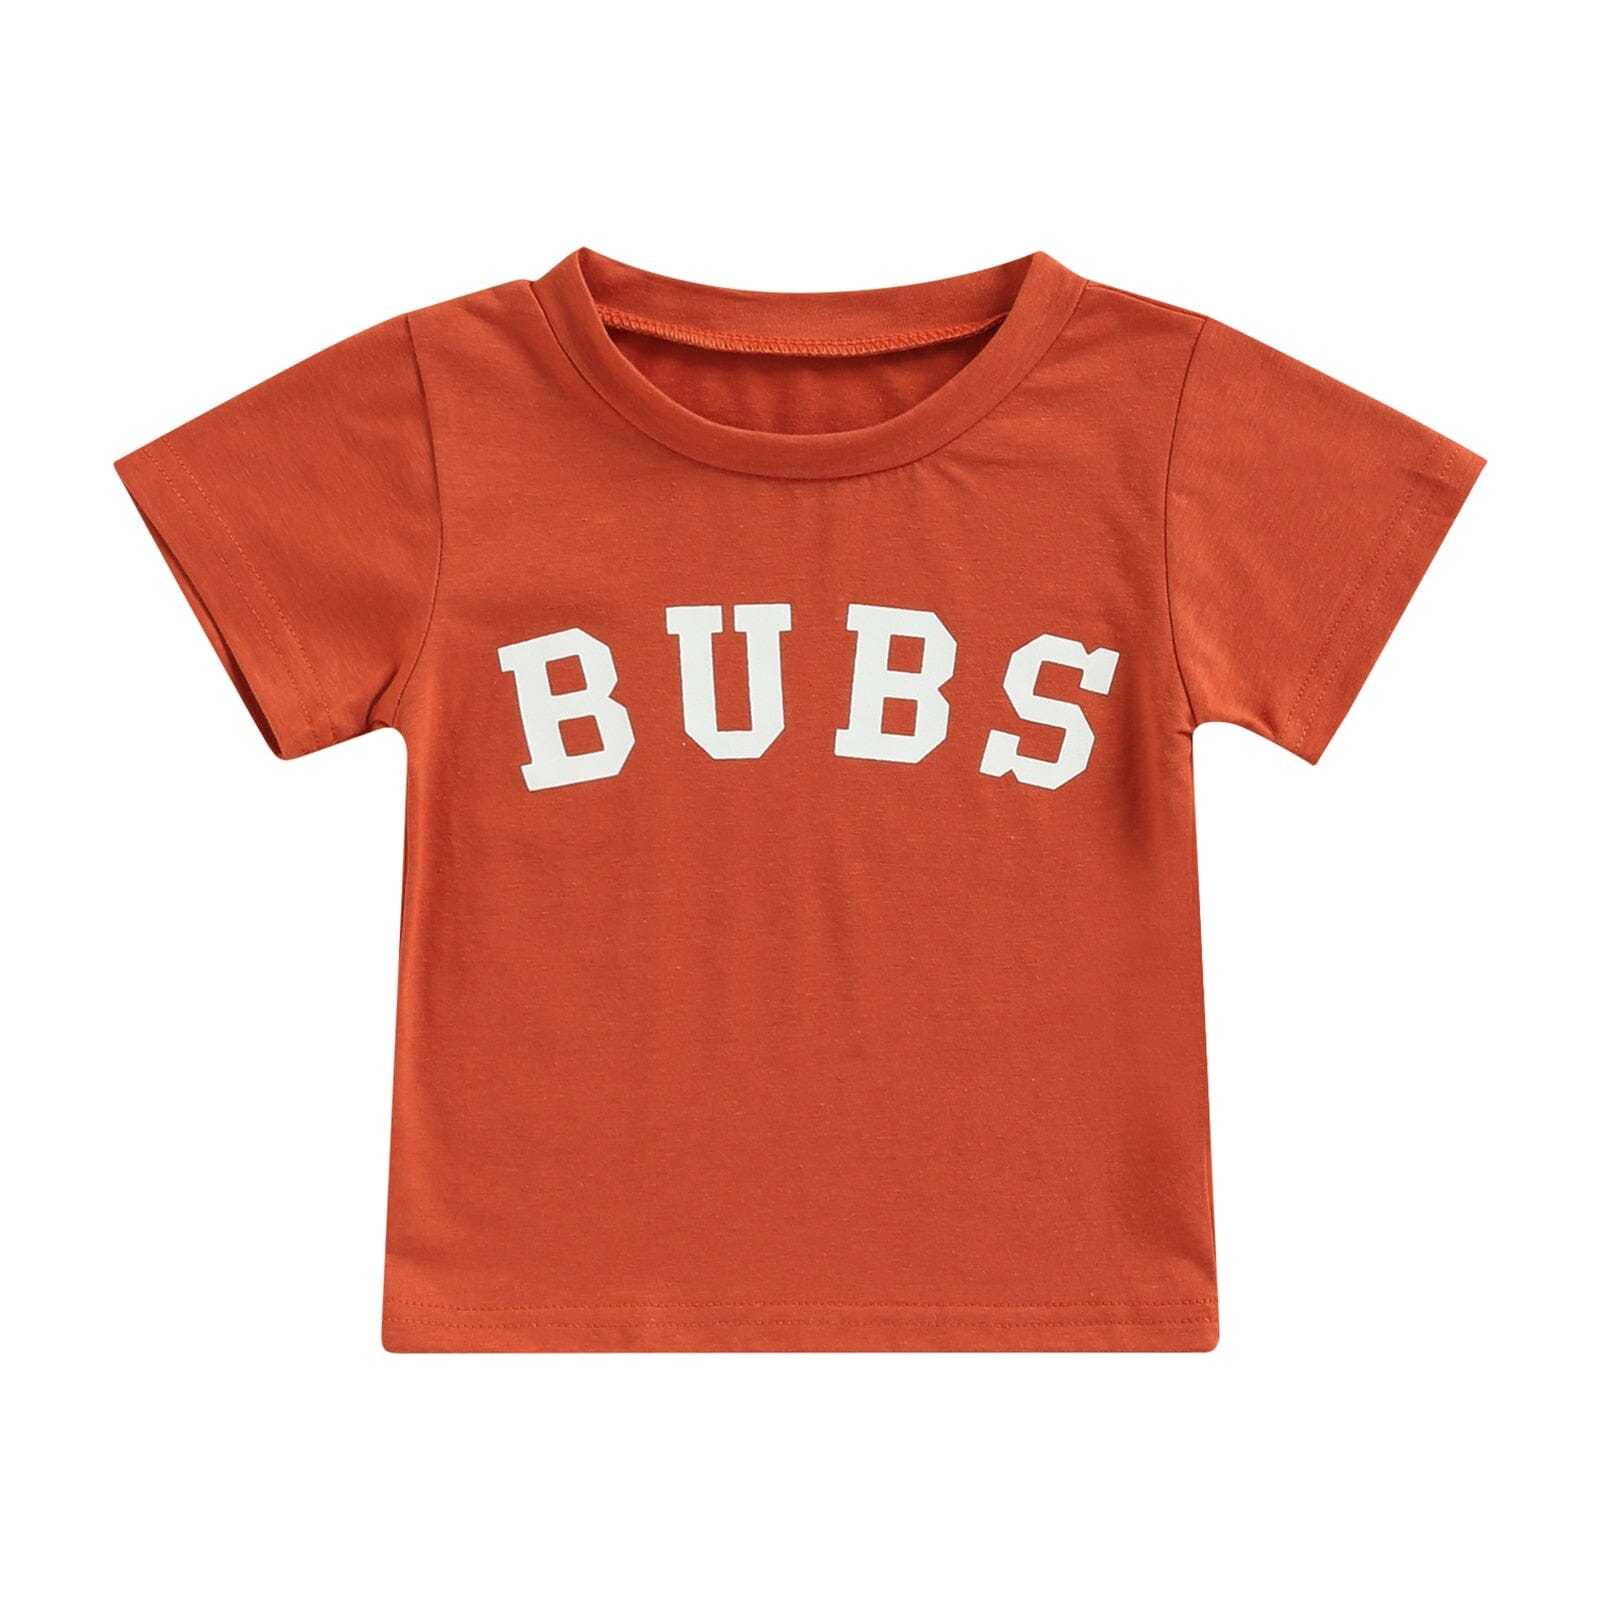 Camiseta Infantil Bubs Loja Click Certo Marrom 1-2 Anos 